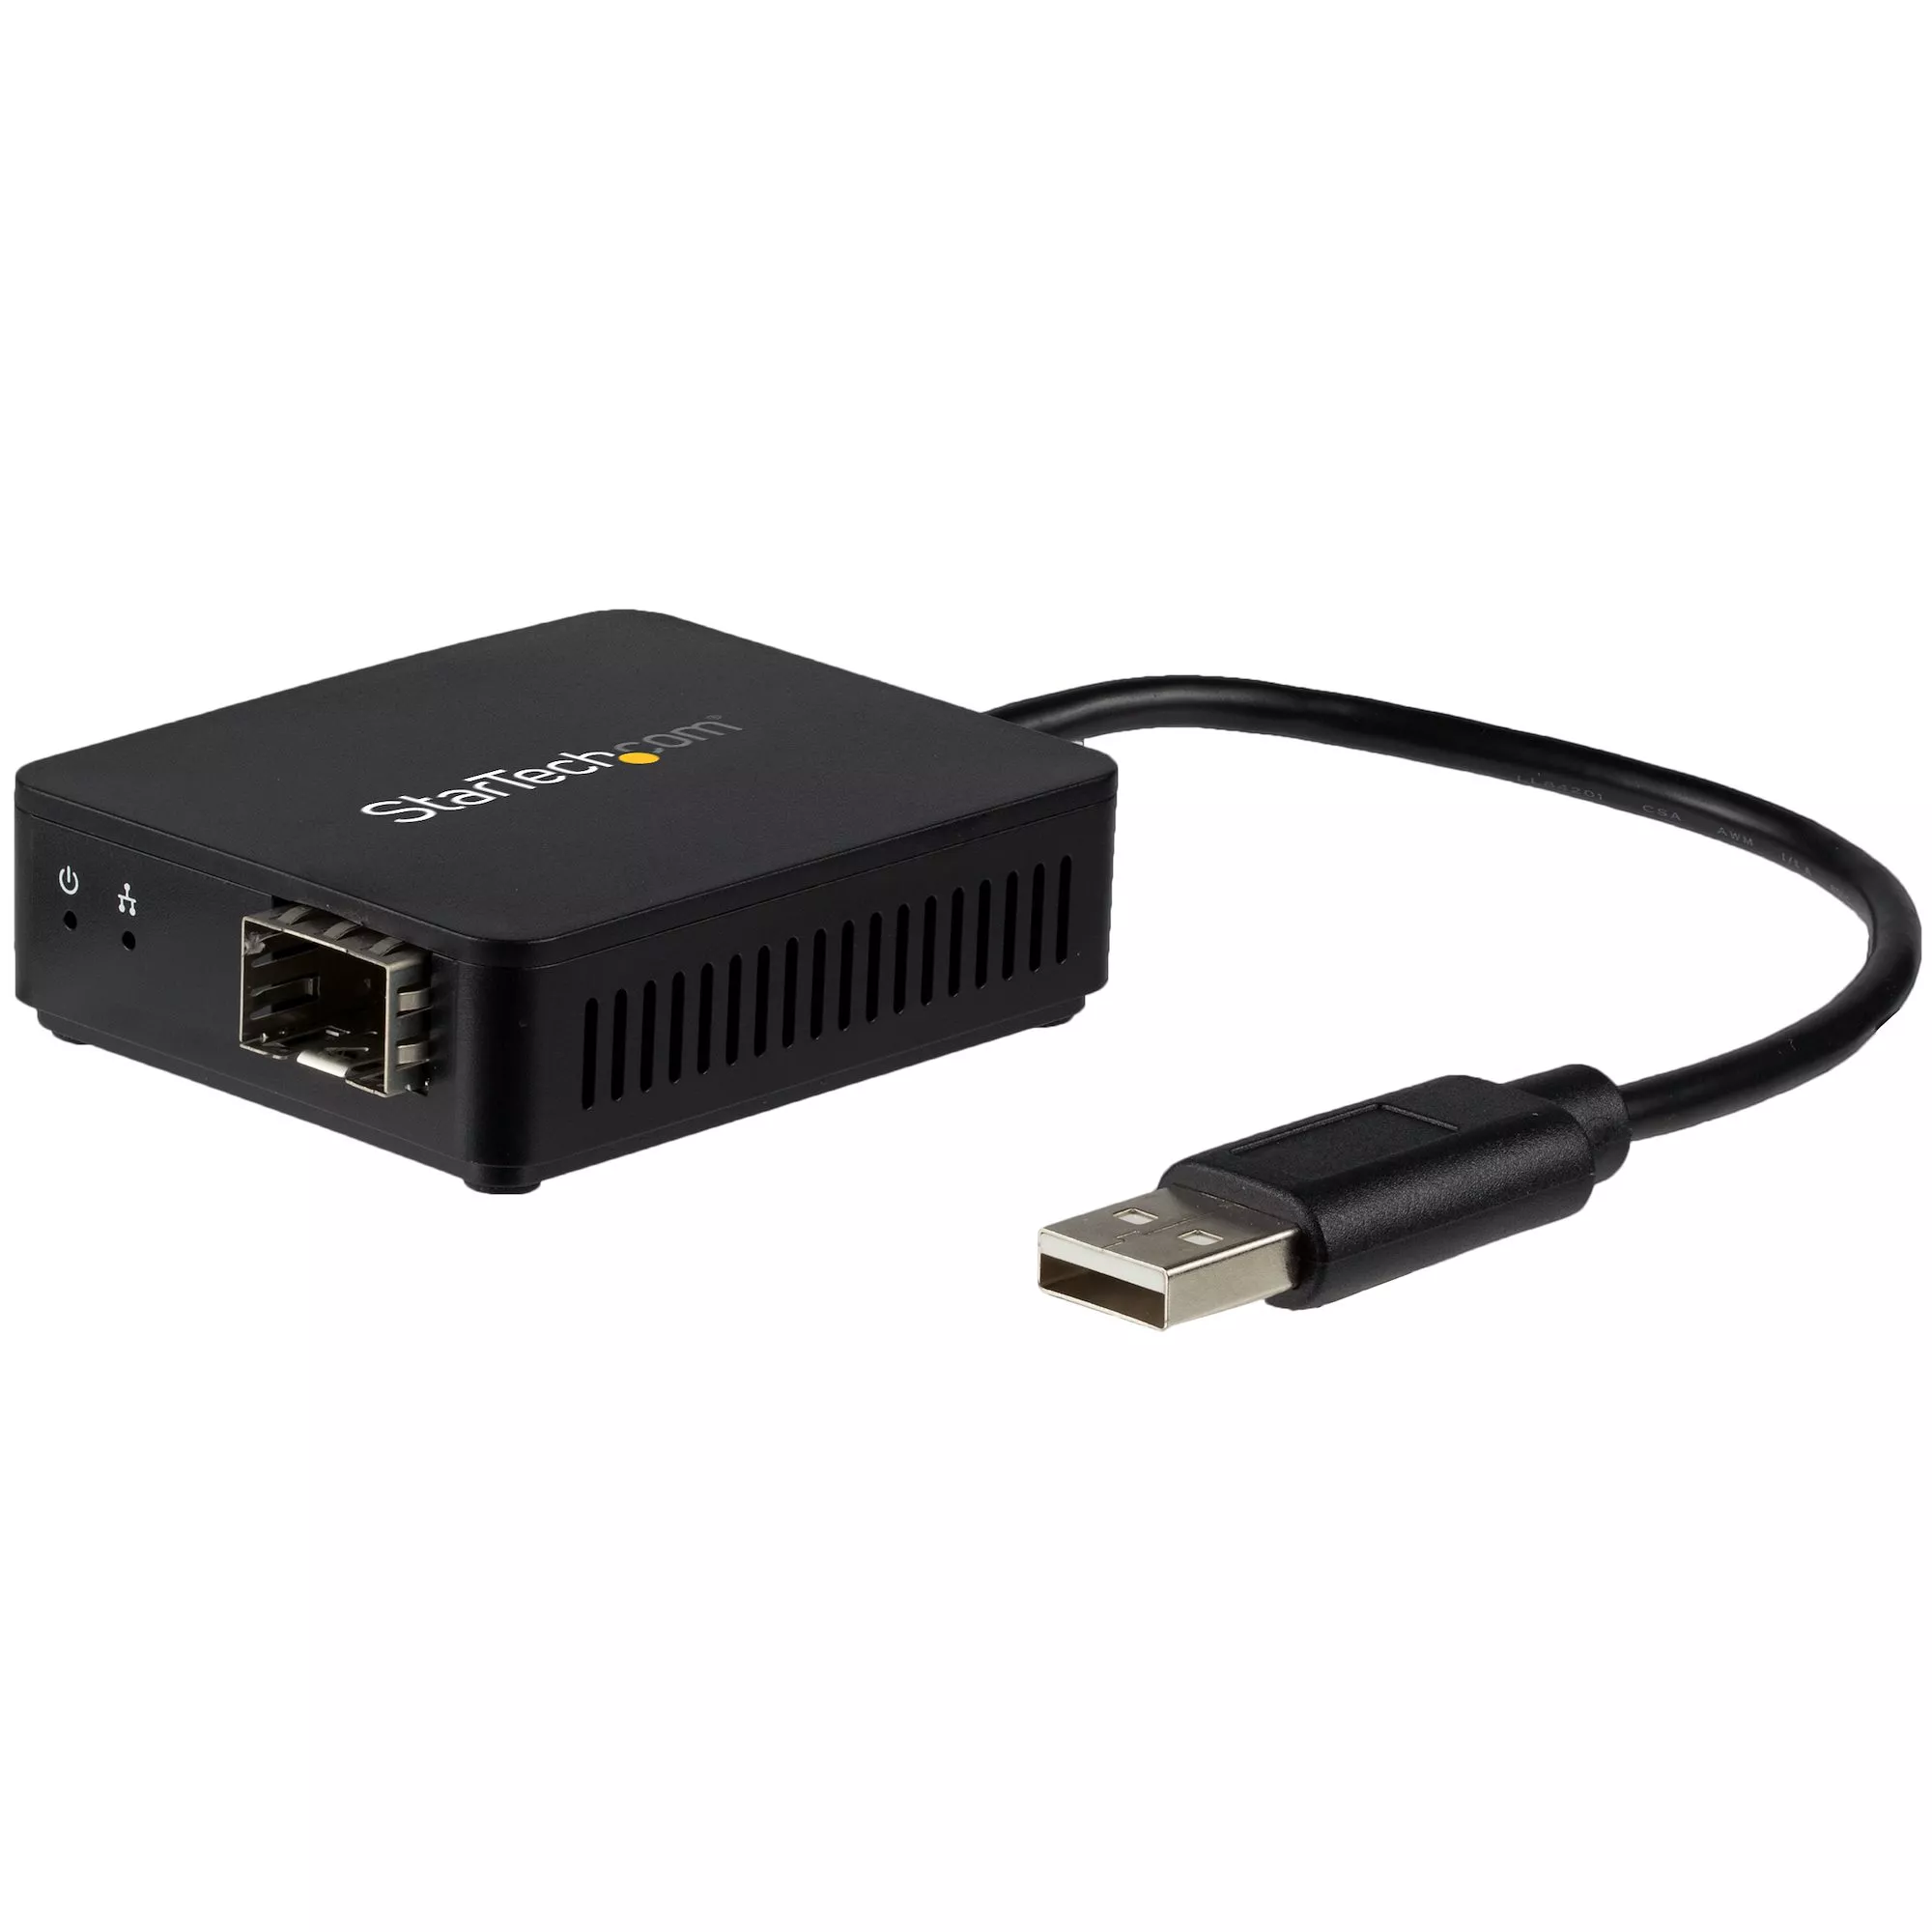 Achat StarTech.com Adaptateur réseau USB 2.0 vers fibre optique au meilleur prix